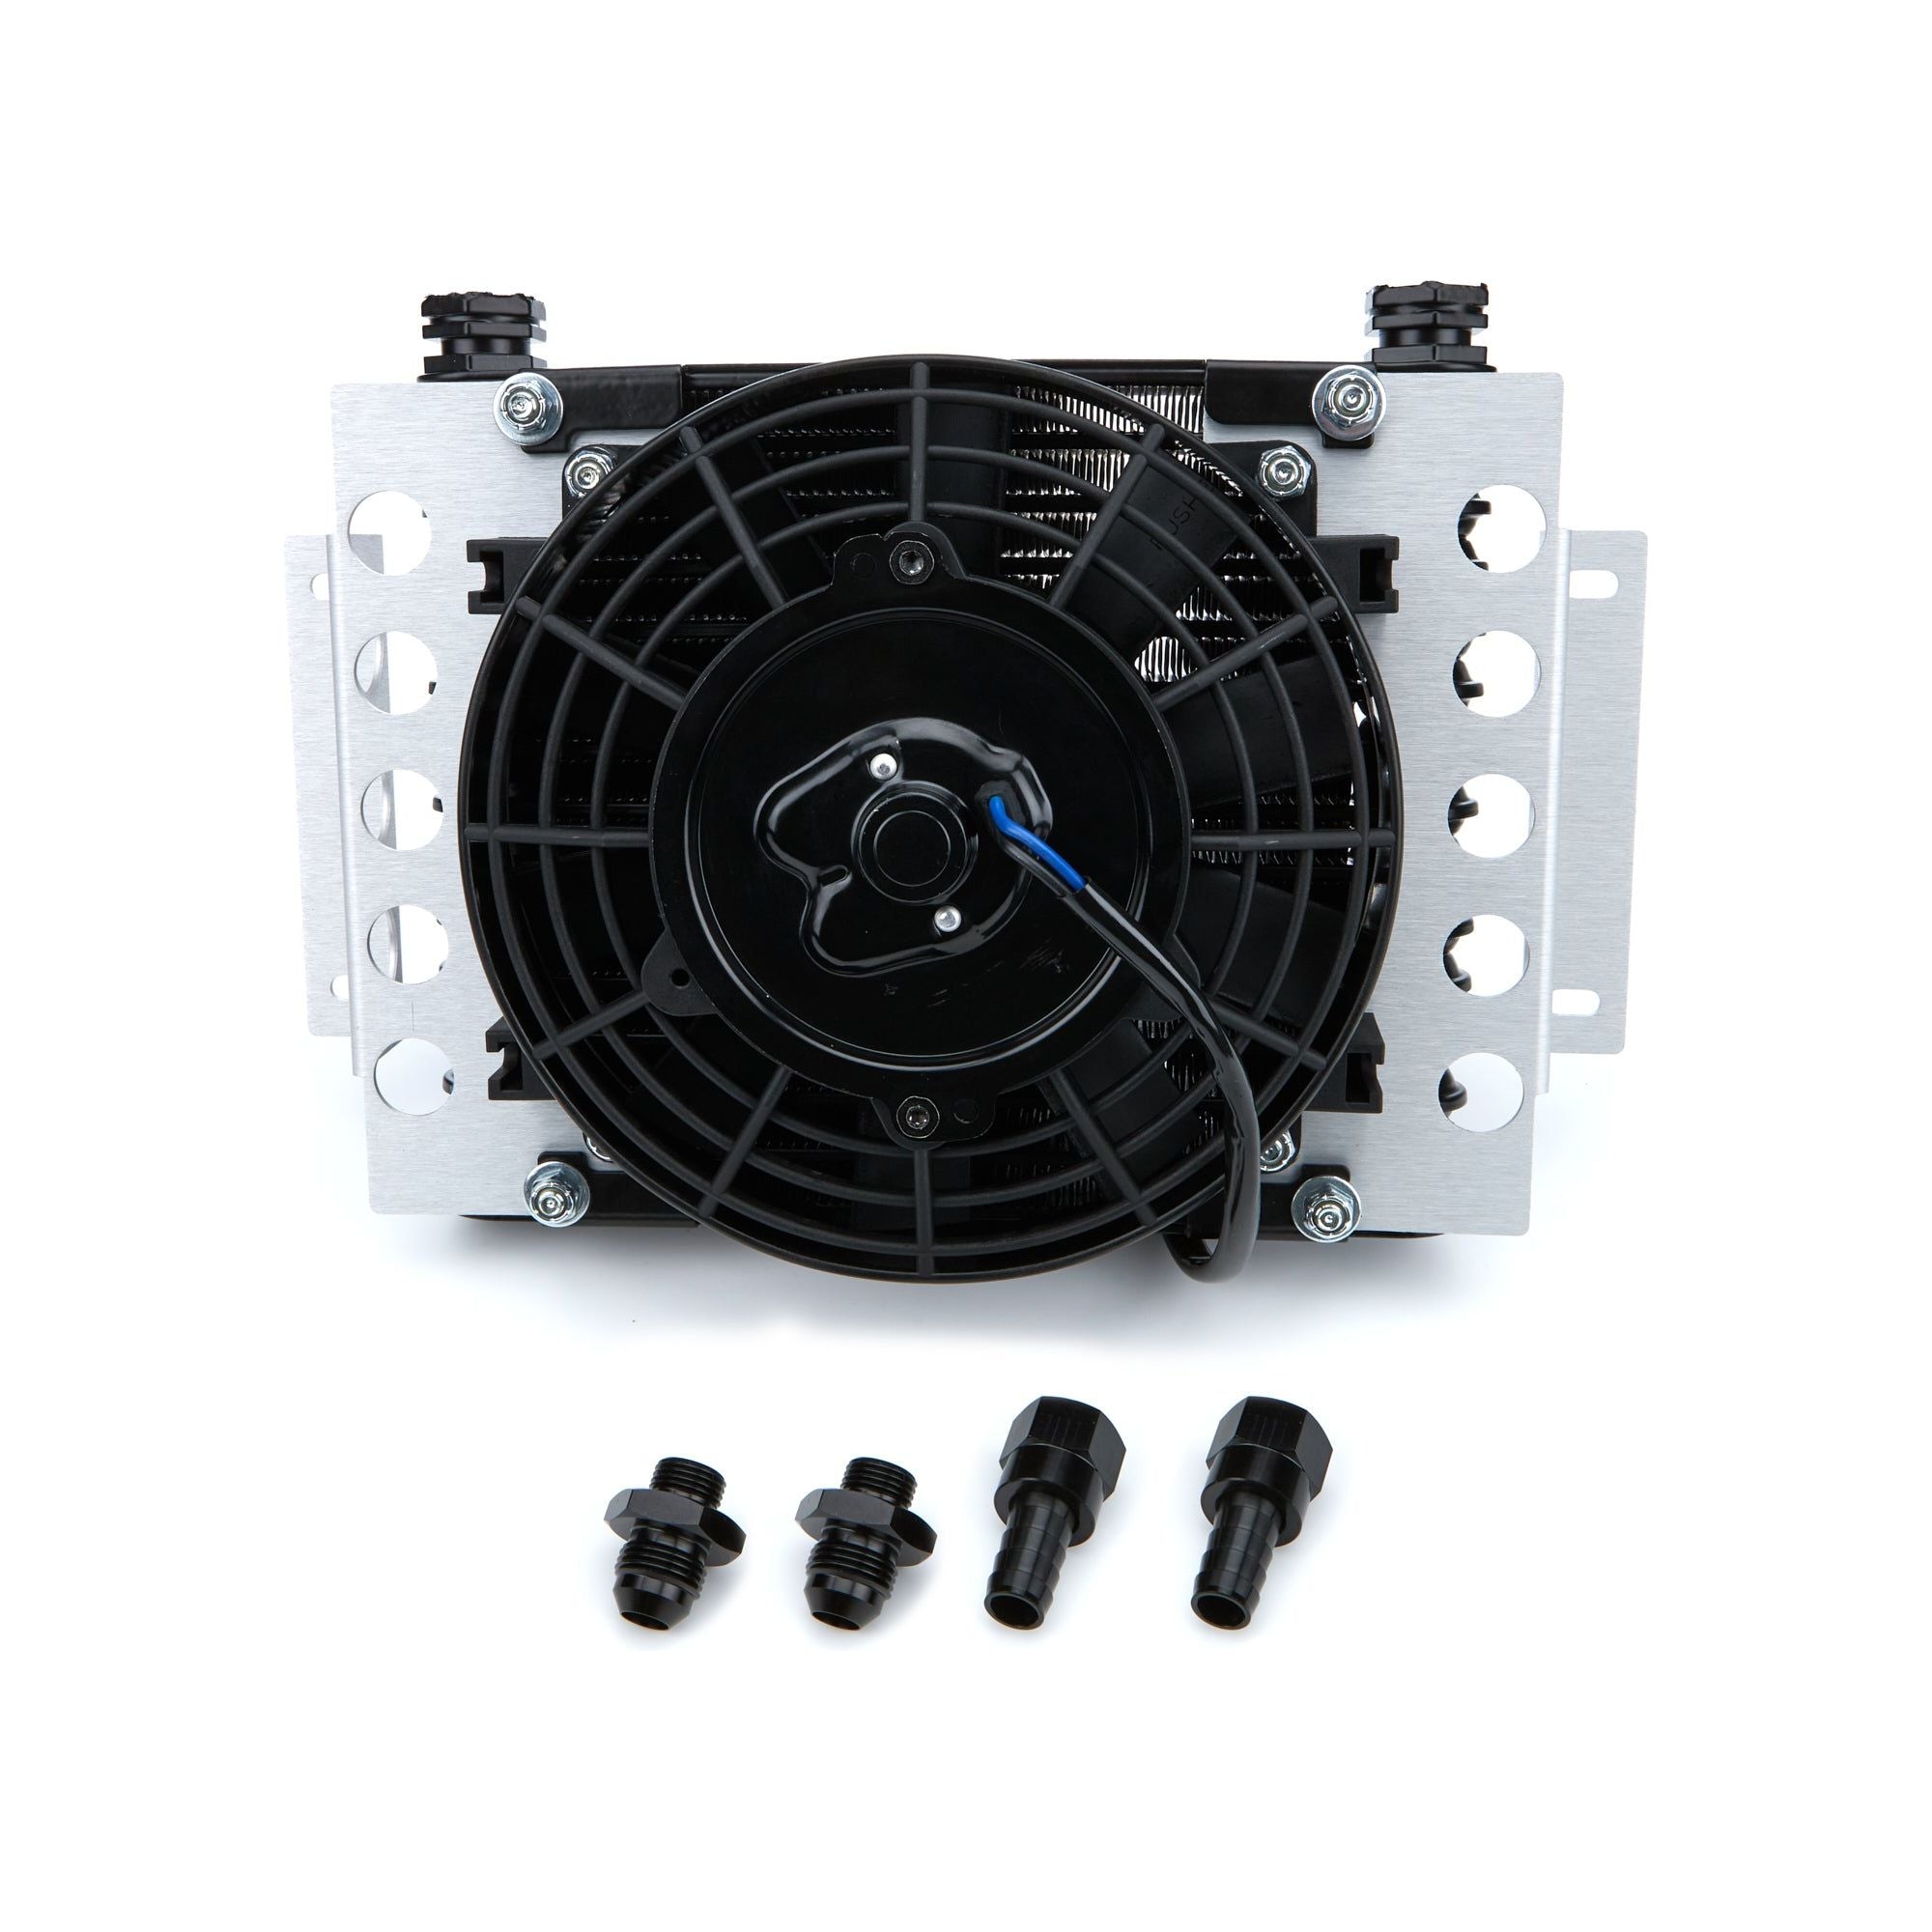 DERALE DER15850 Atomic Cool Remote Transmission Oil Cooler & Fan -8AN Black